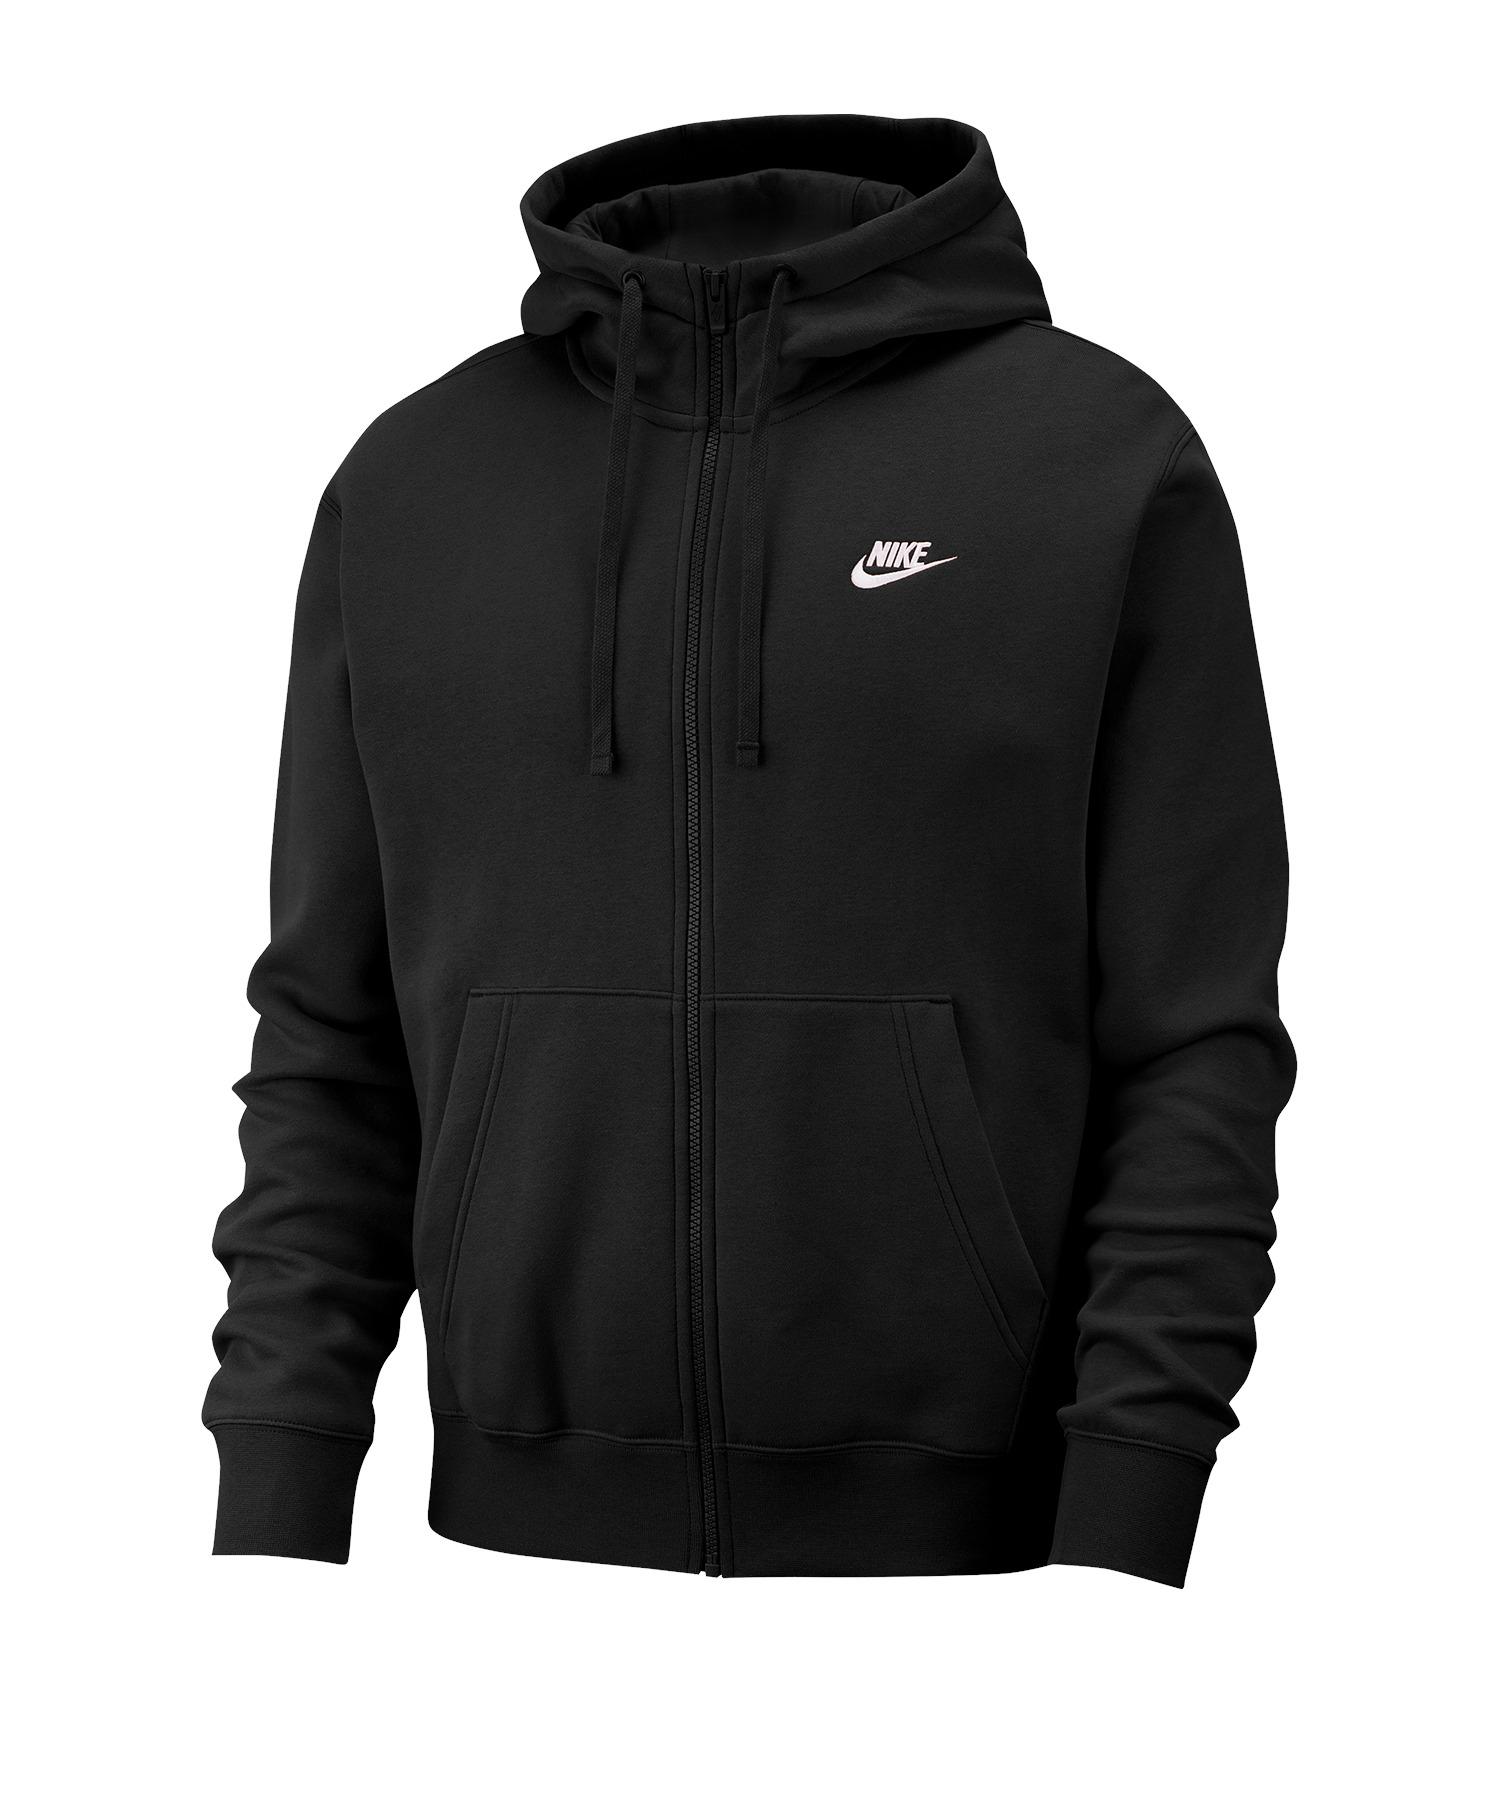 Jacken für Herren von Nike von SportScheck kaufen